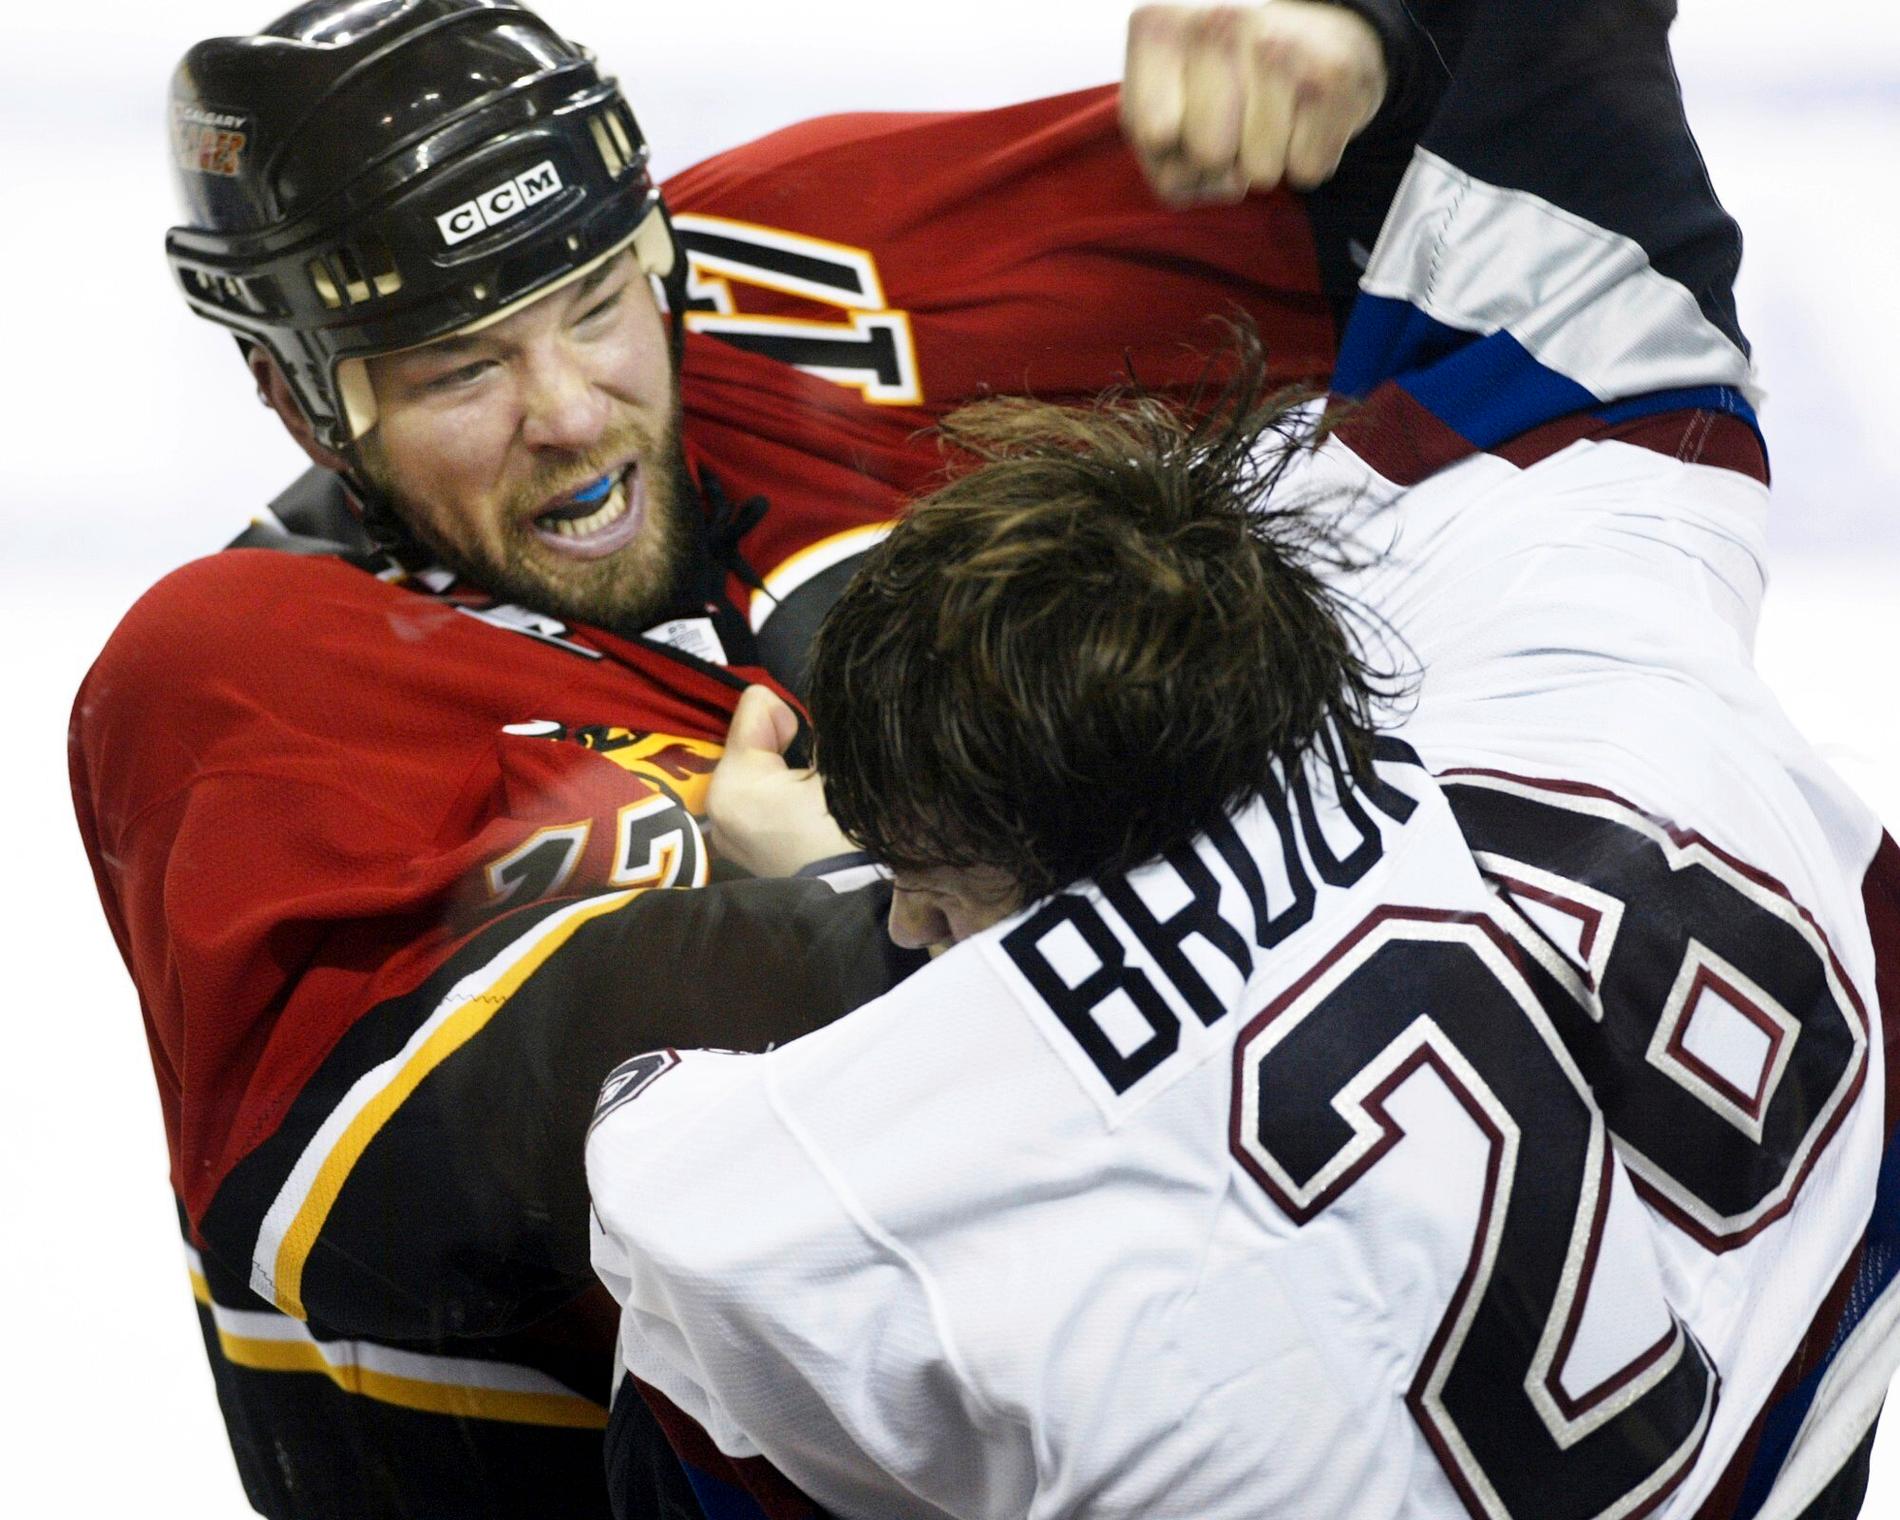 Chris Simon var känd i NHL som en slagskämpe och fysisk spelare.